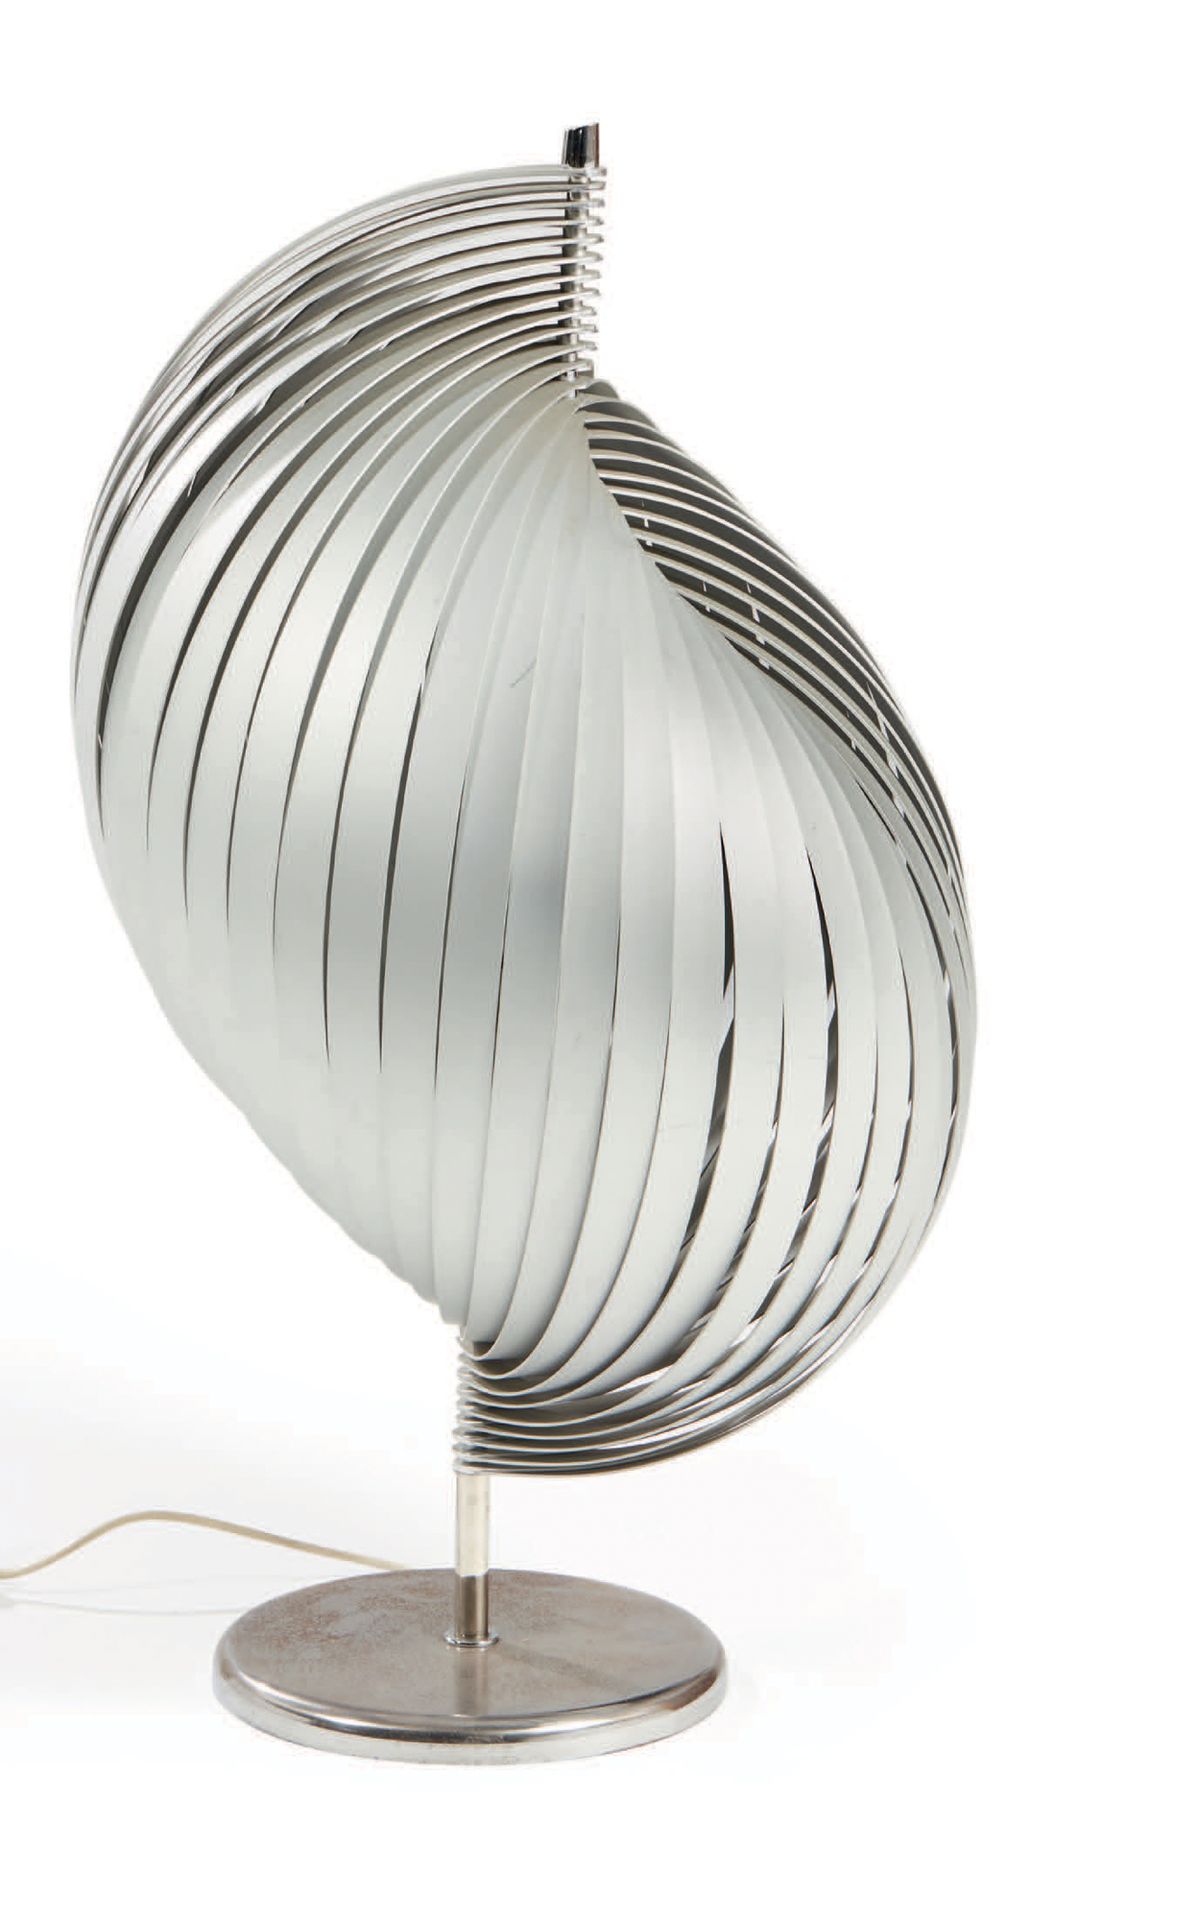 HENRI MATHIEU (XXE) 
Lámpara de pie en metal cromado modelo "Nickelor"
H: 90 cm